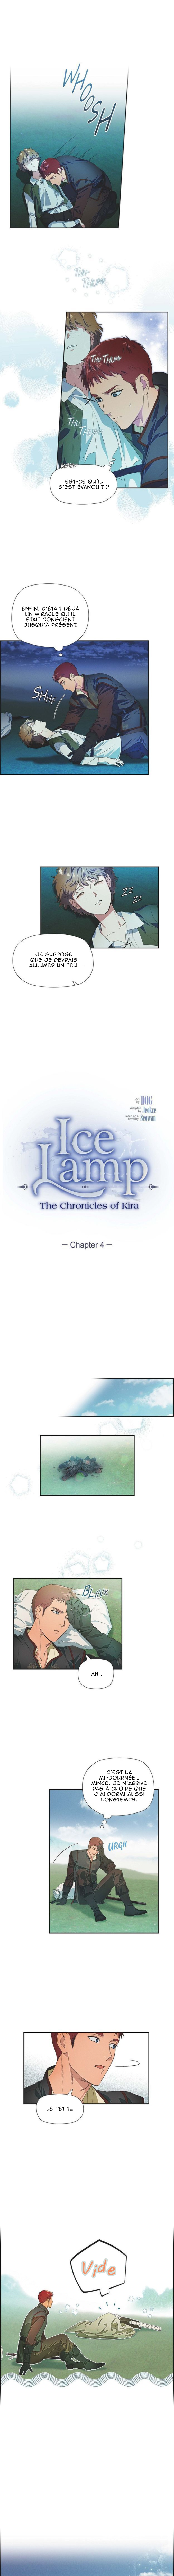 Ice Lamp - Les Chroniques De Kira: Chapter 4 - Page 1